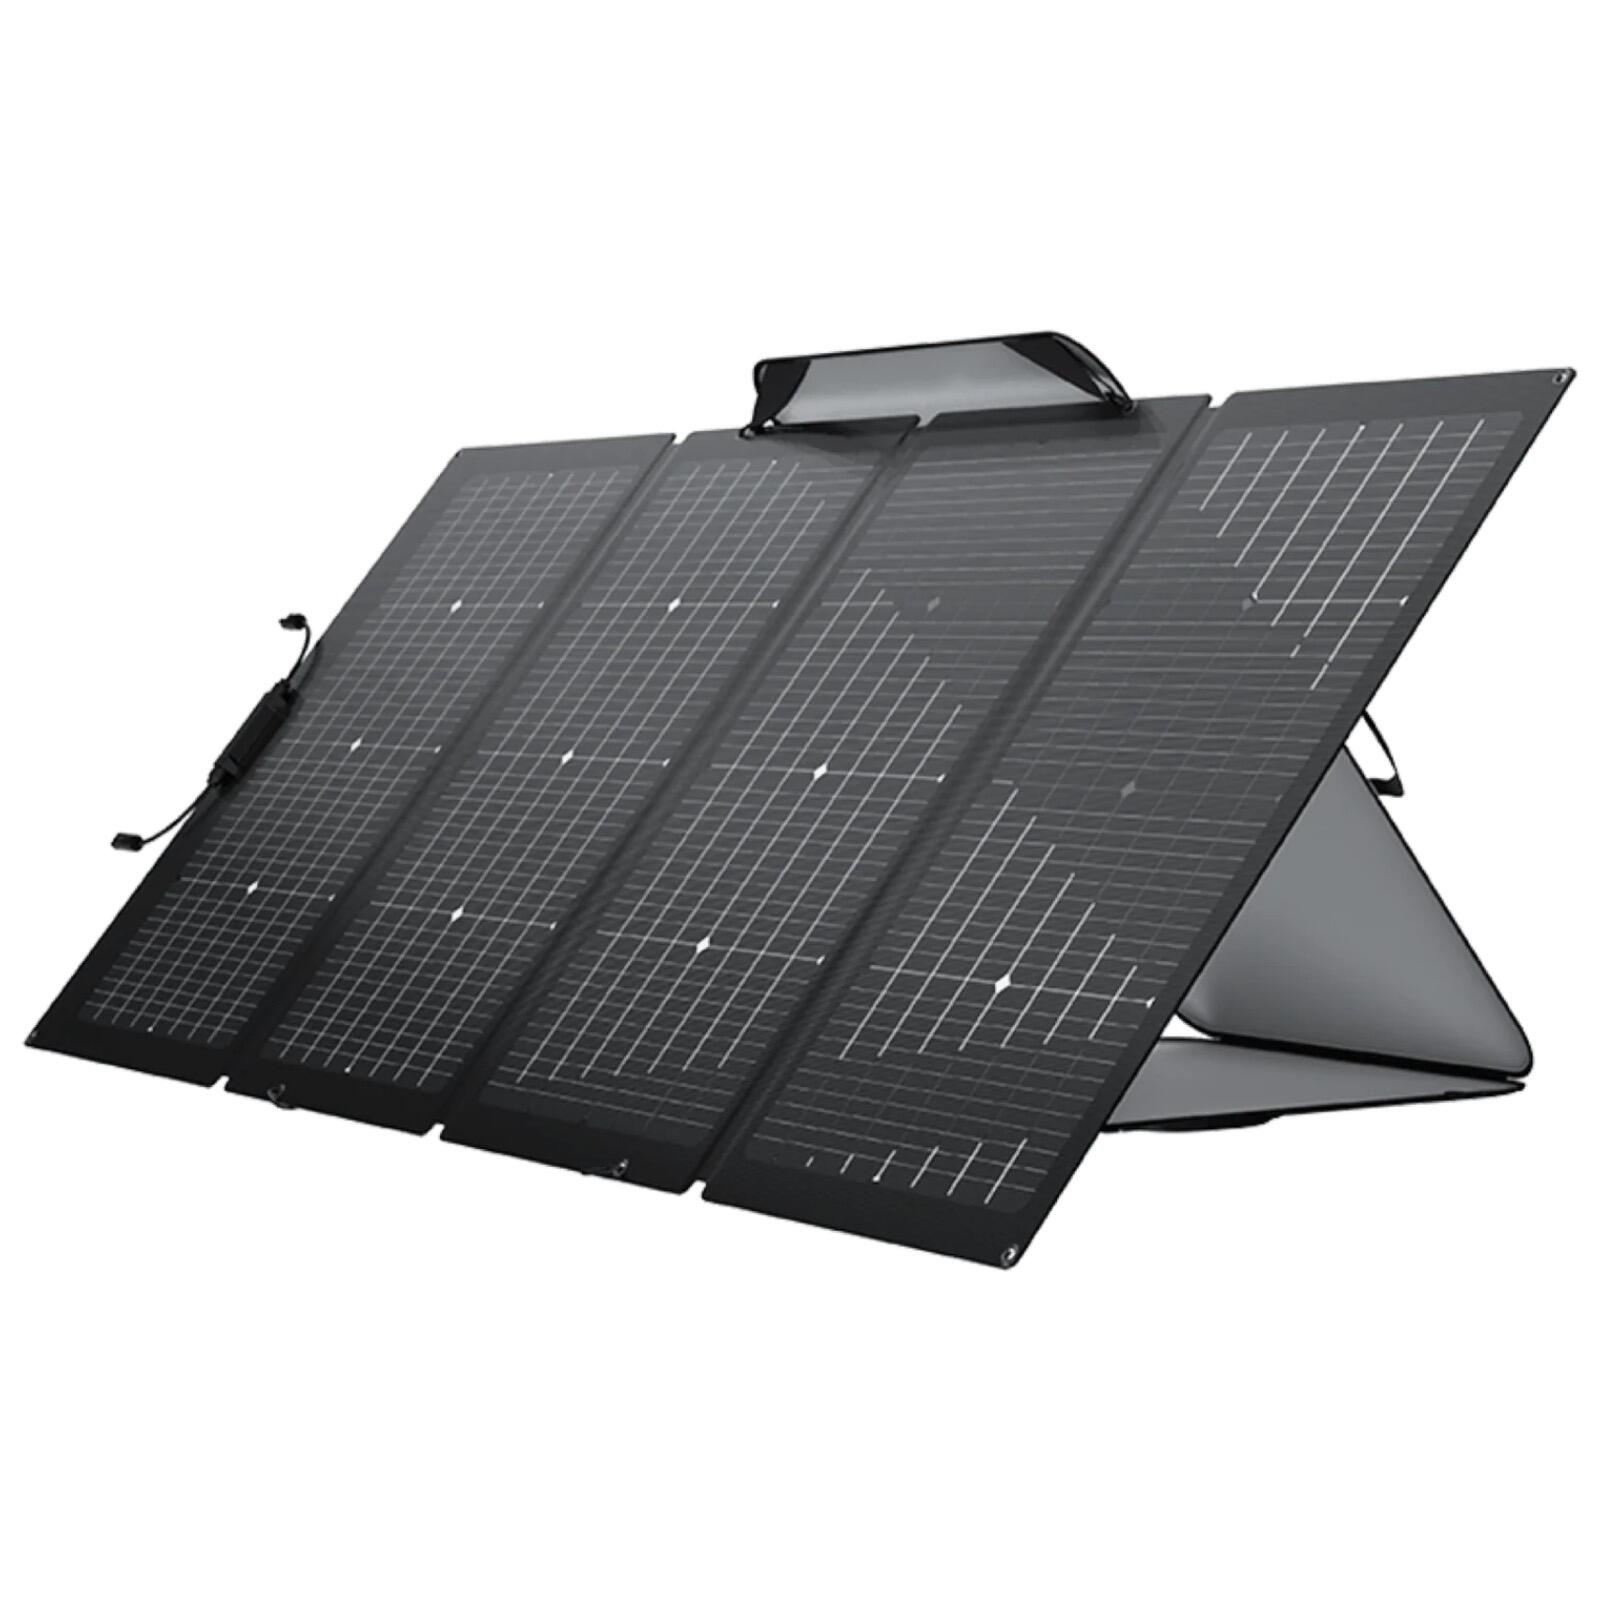 EcoFlow 220w Bifacial Portable Solar Panel Foldable & Adjustable Angle Kickstand